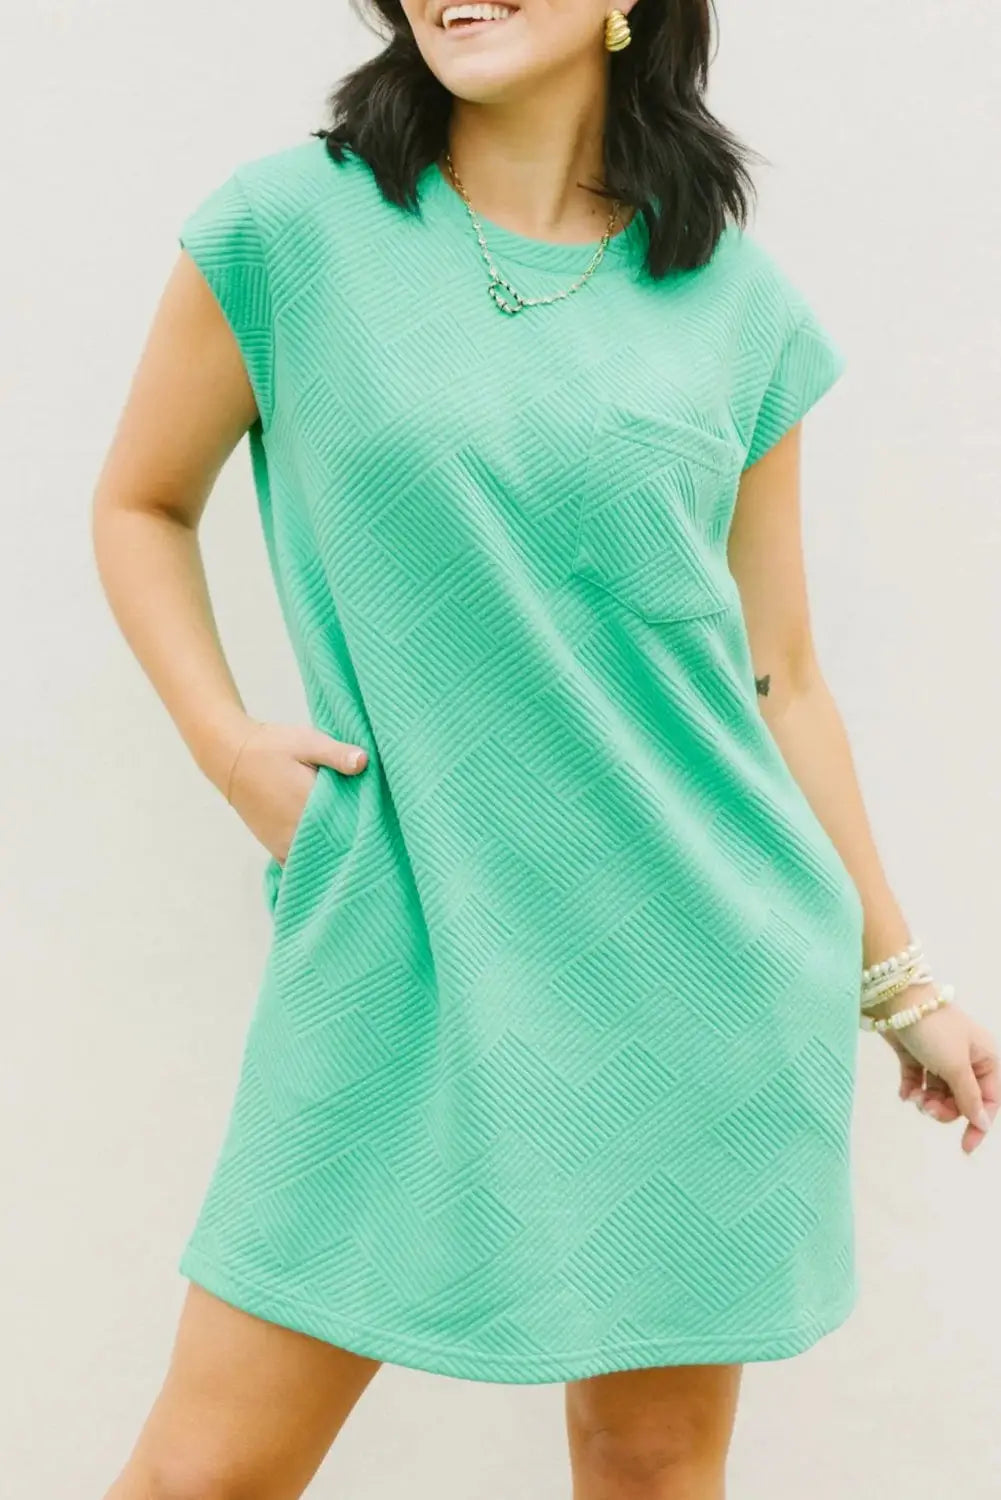 Textured t-shirt dress - mint green cap sleeve - s / 95% polyester + 5% elastane - t shirt dresses